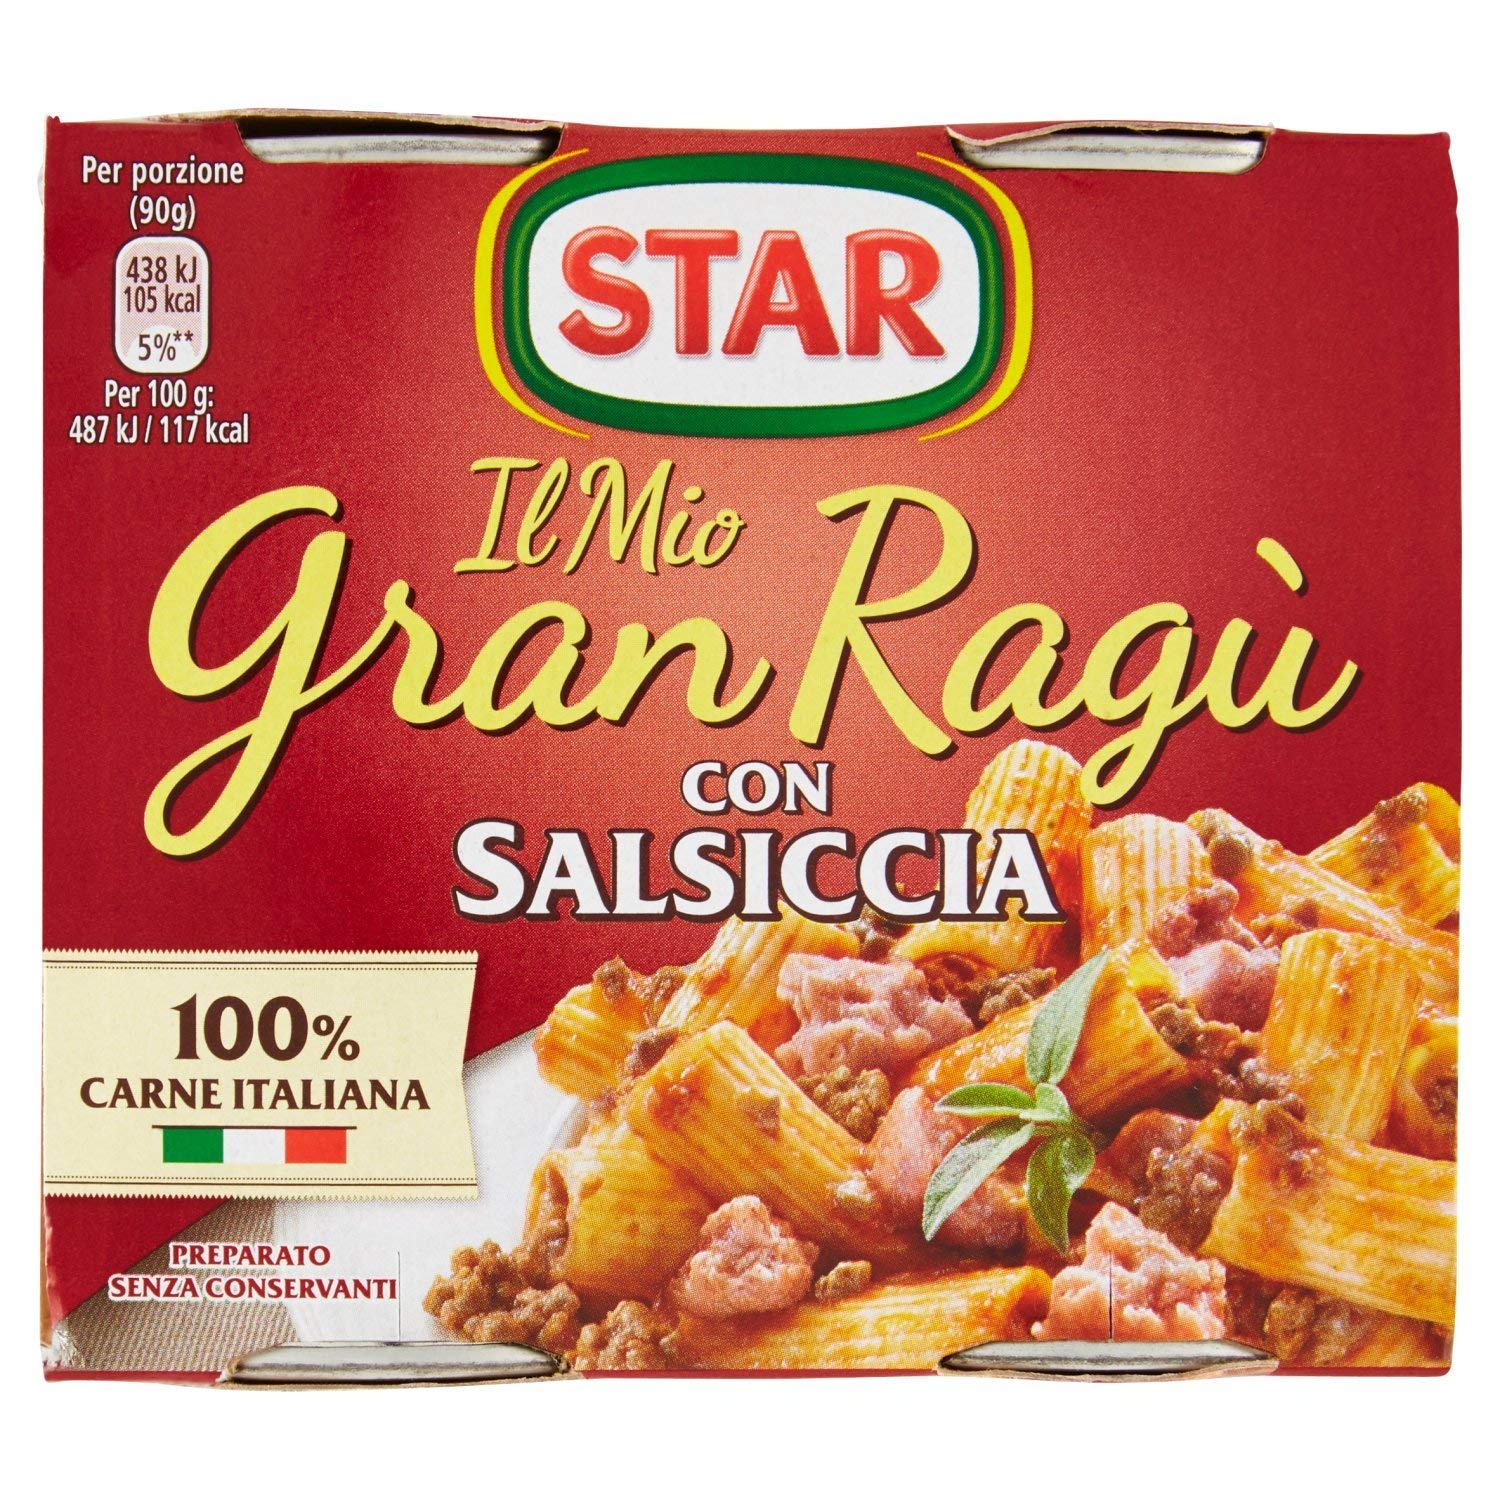 Il Mio GranRagù Star con Salsiccia 2x180g